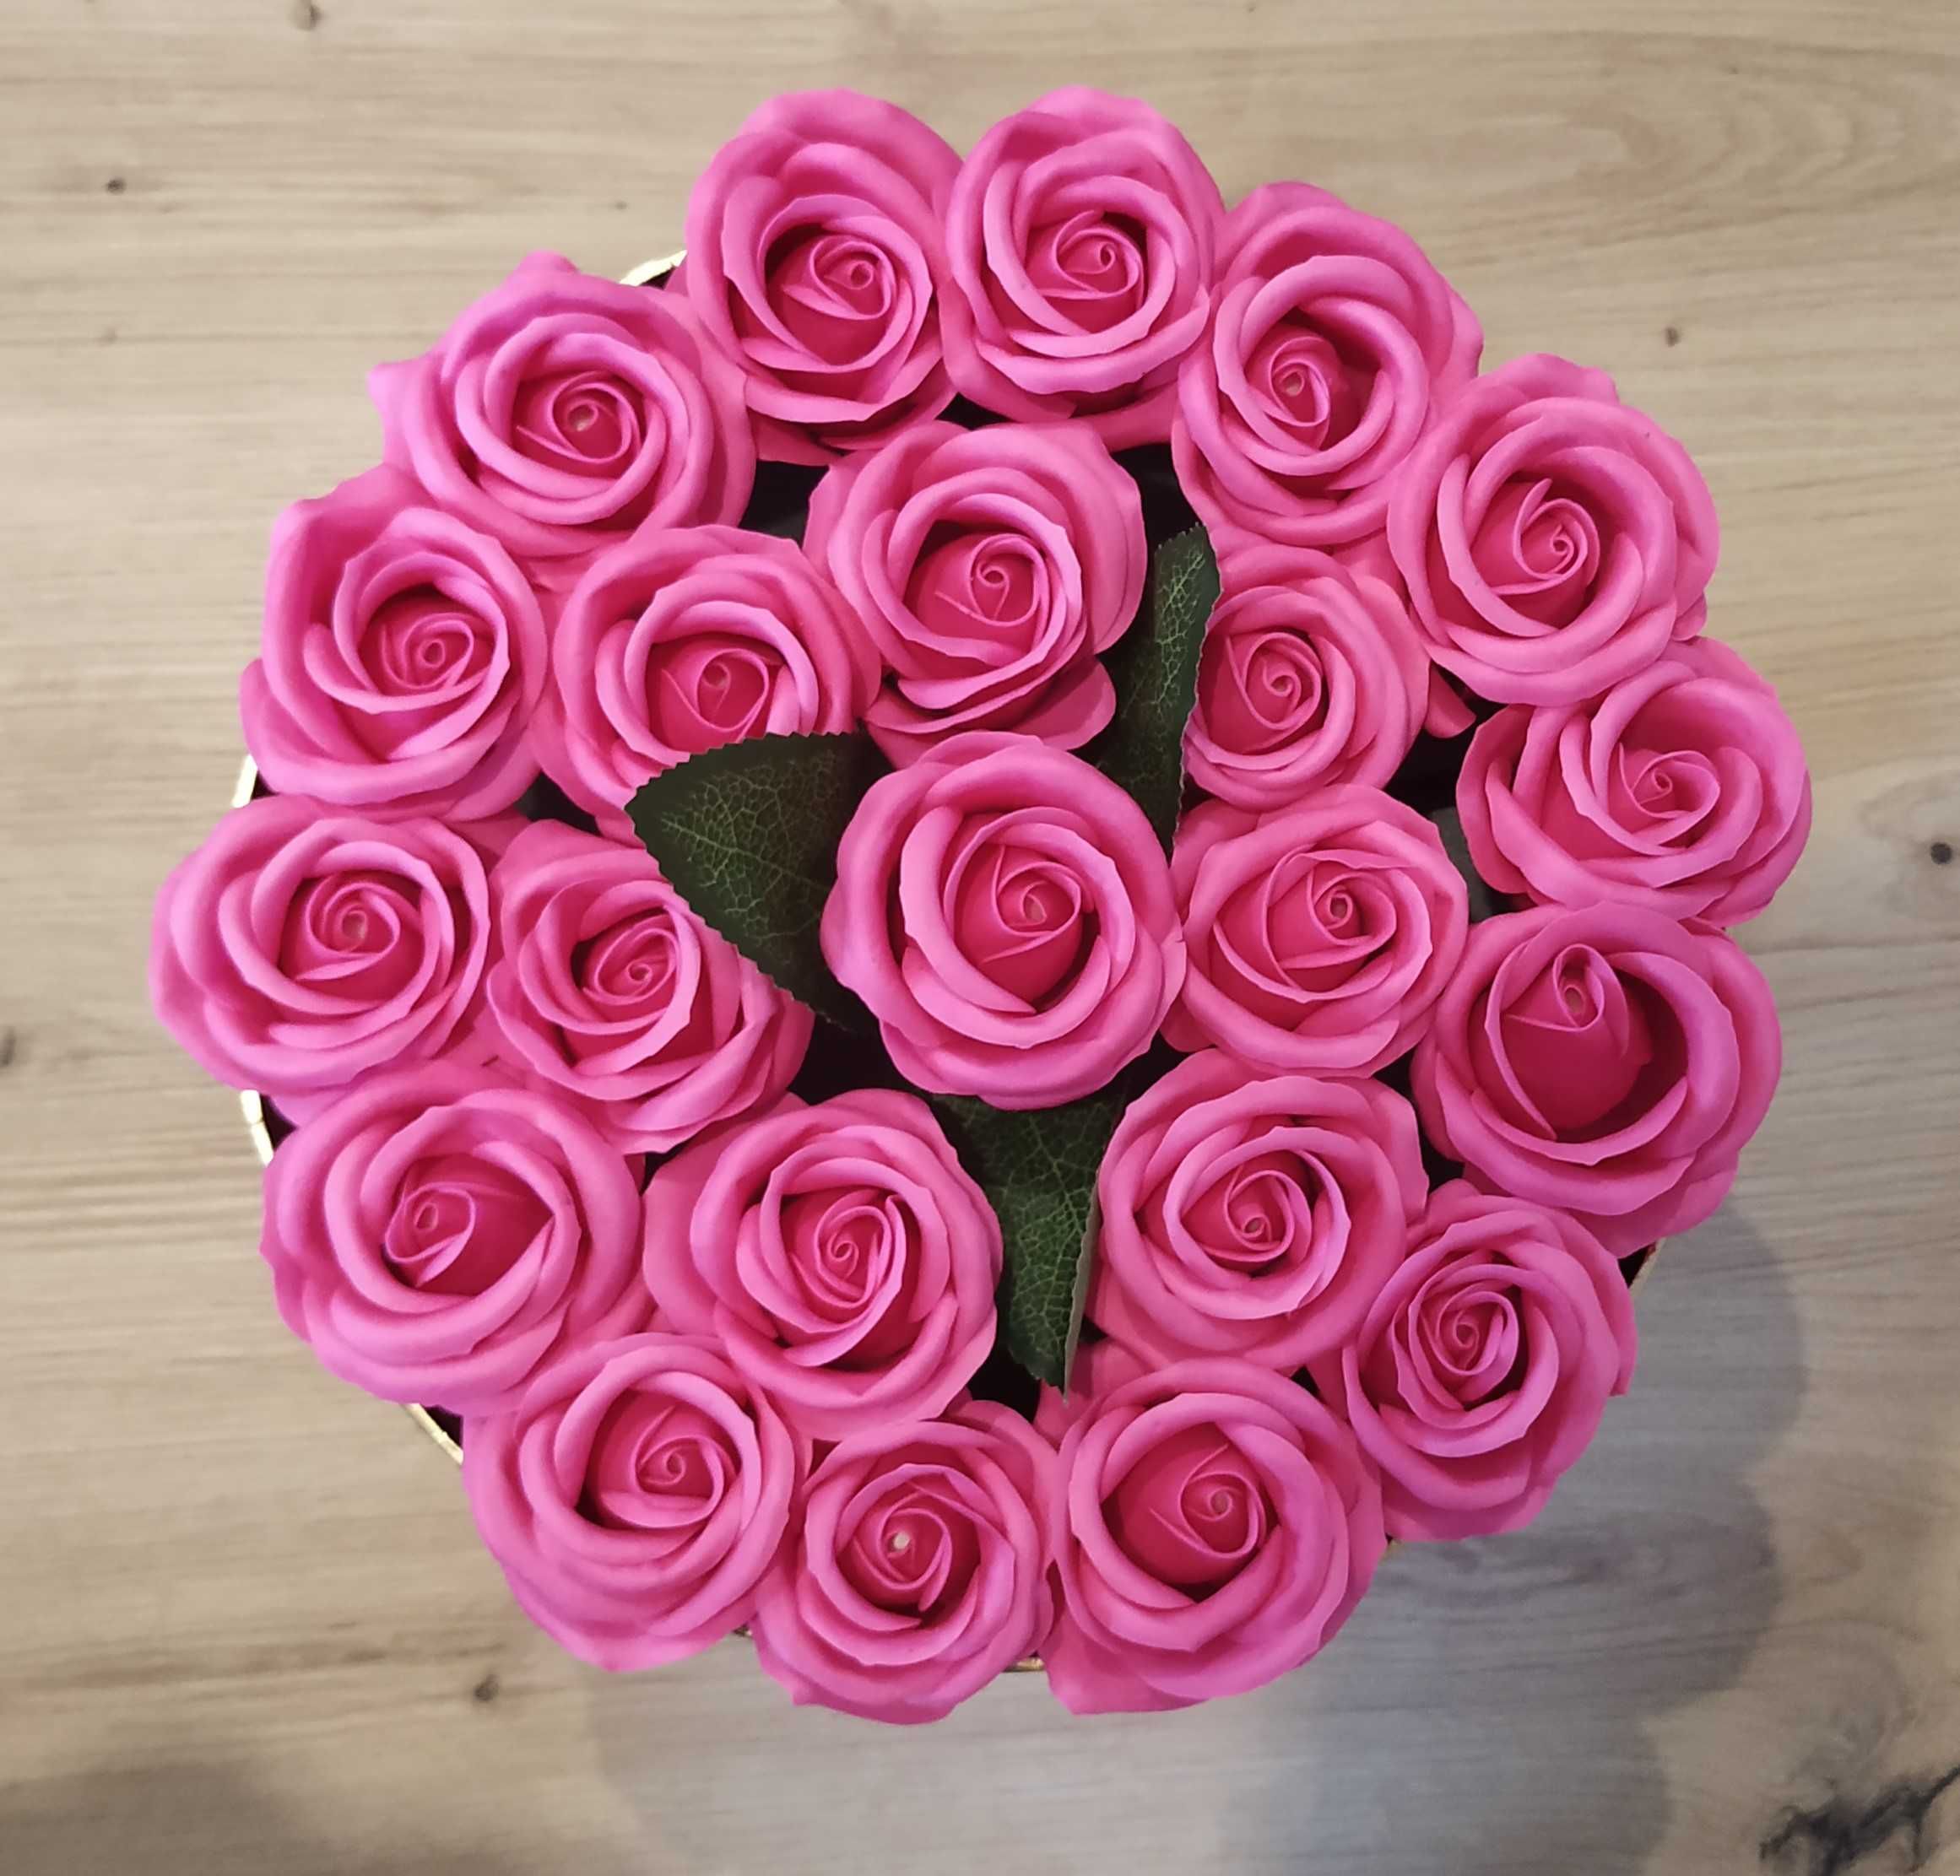 Caixa com rosas de sabão cor fúcsia